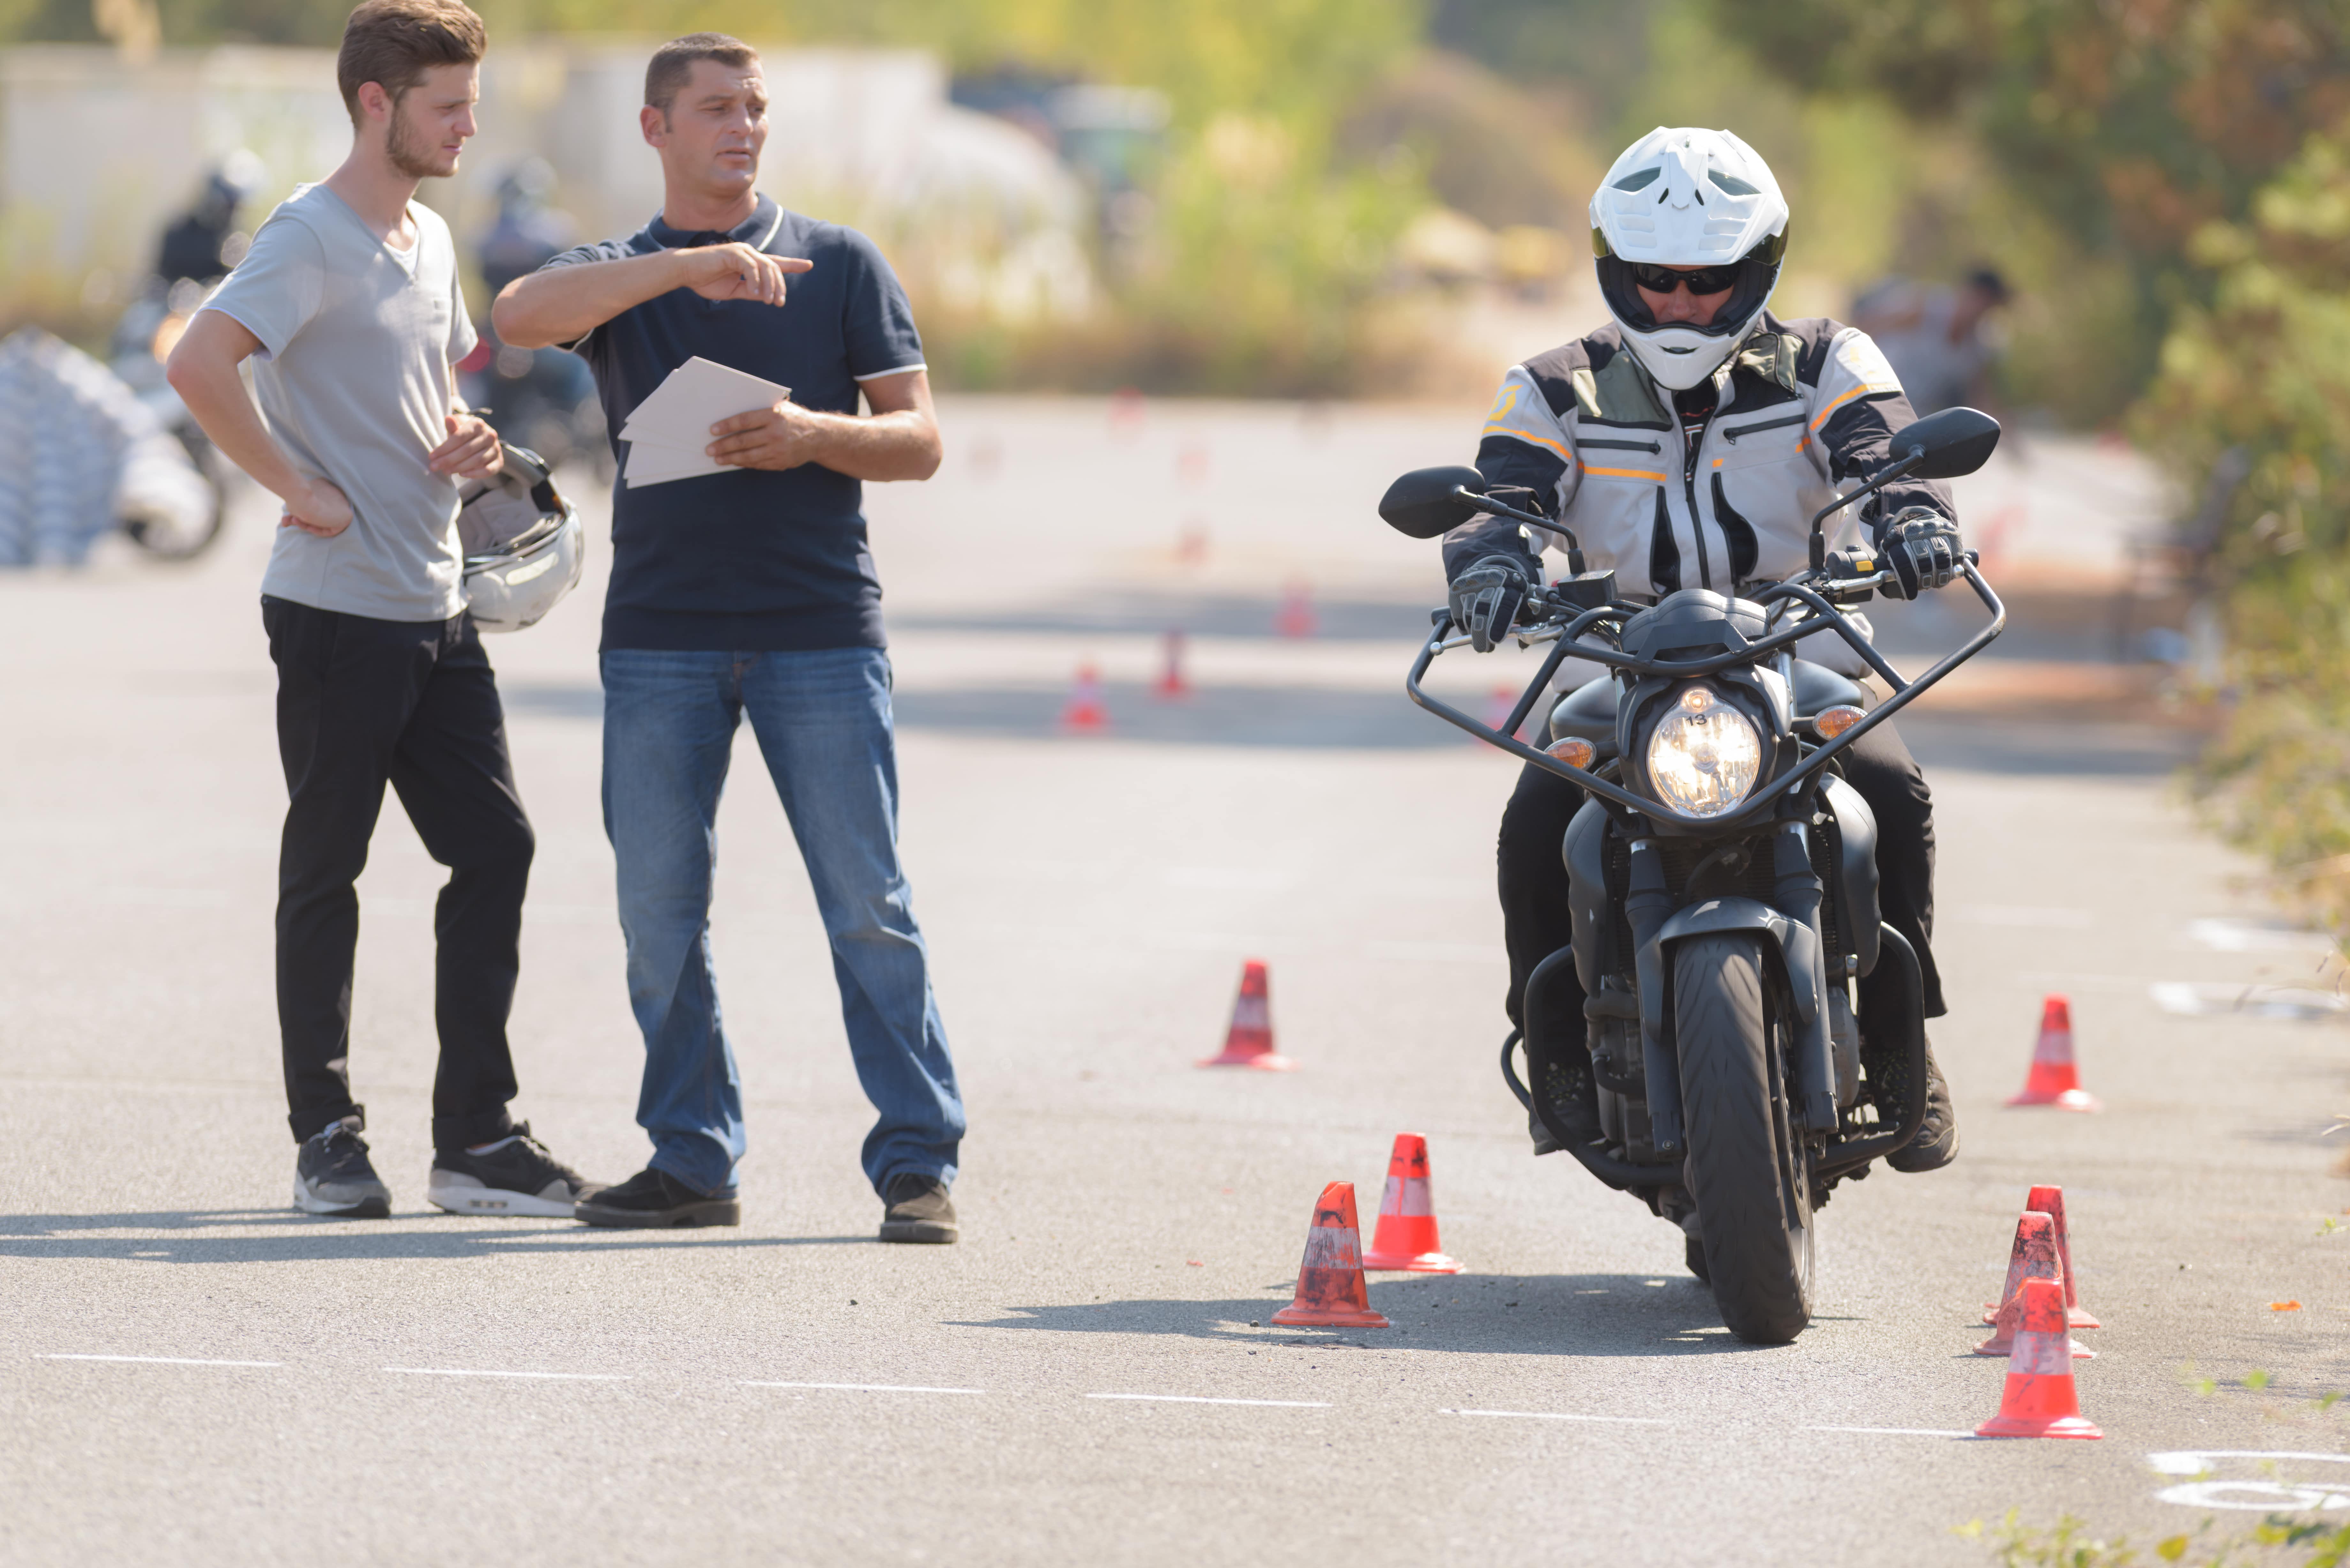 Comment bien se préparer pour le permis moto ?